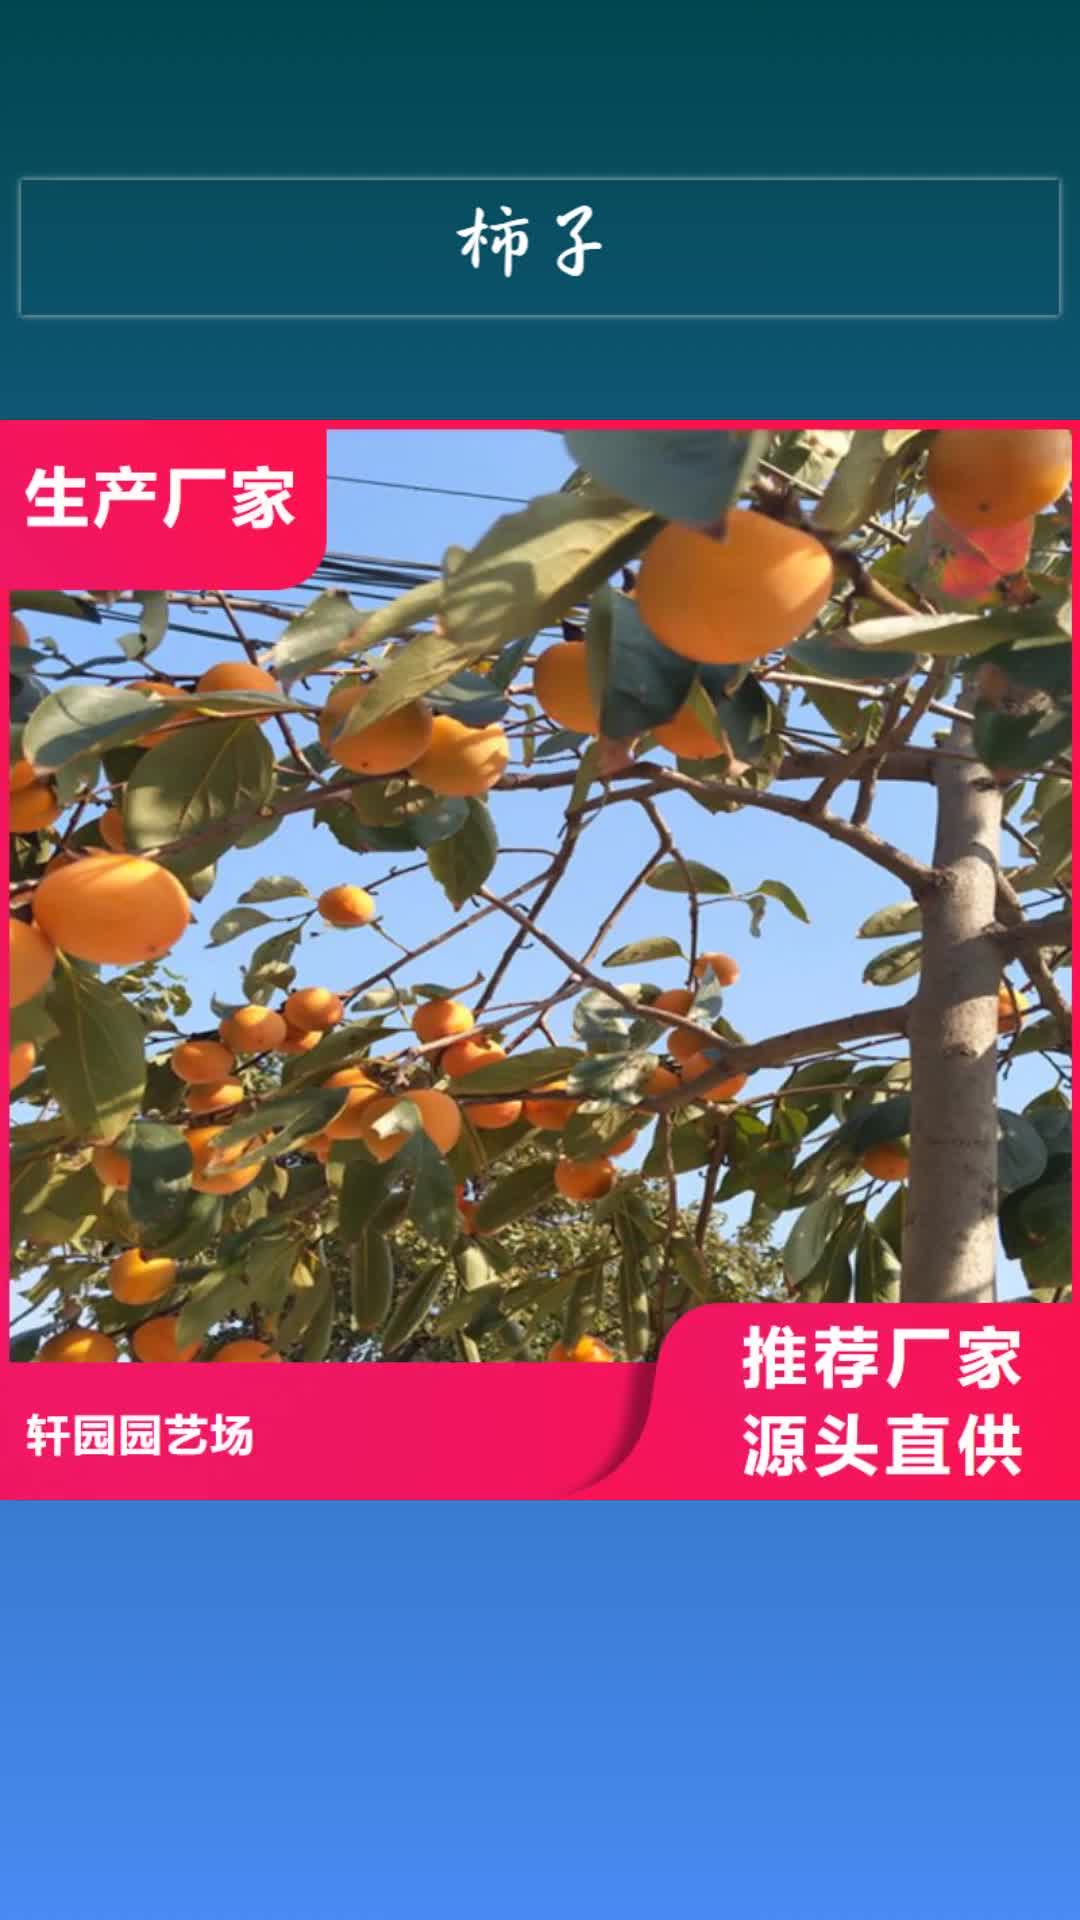 【徐州 柿子-蓝莓苗采购】